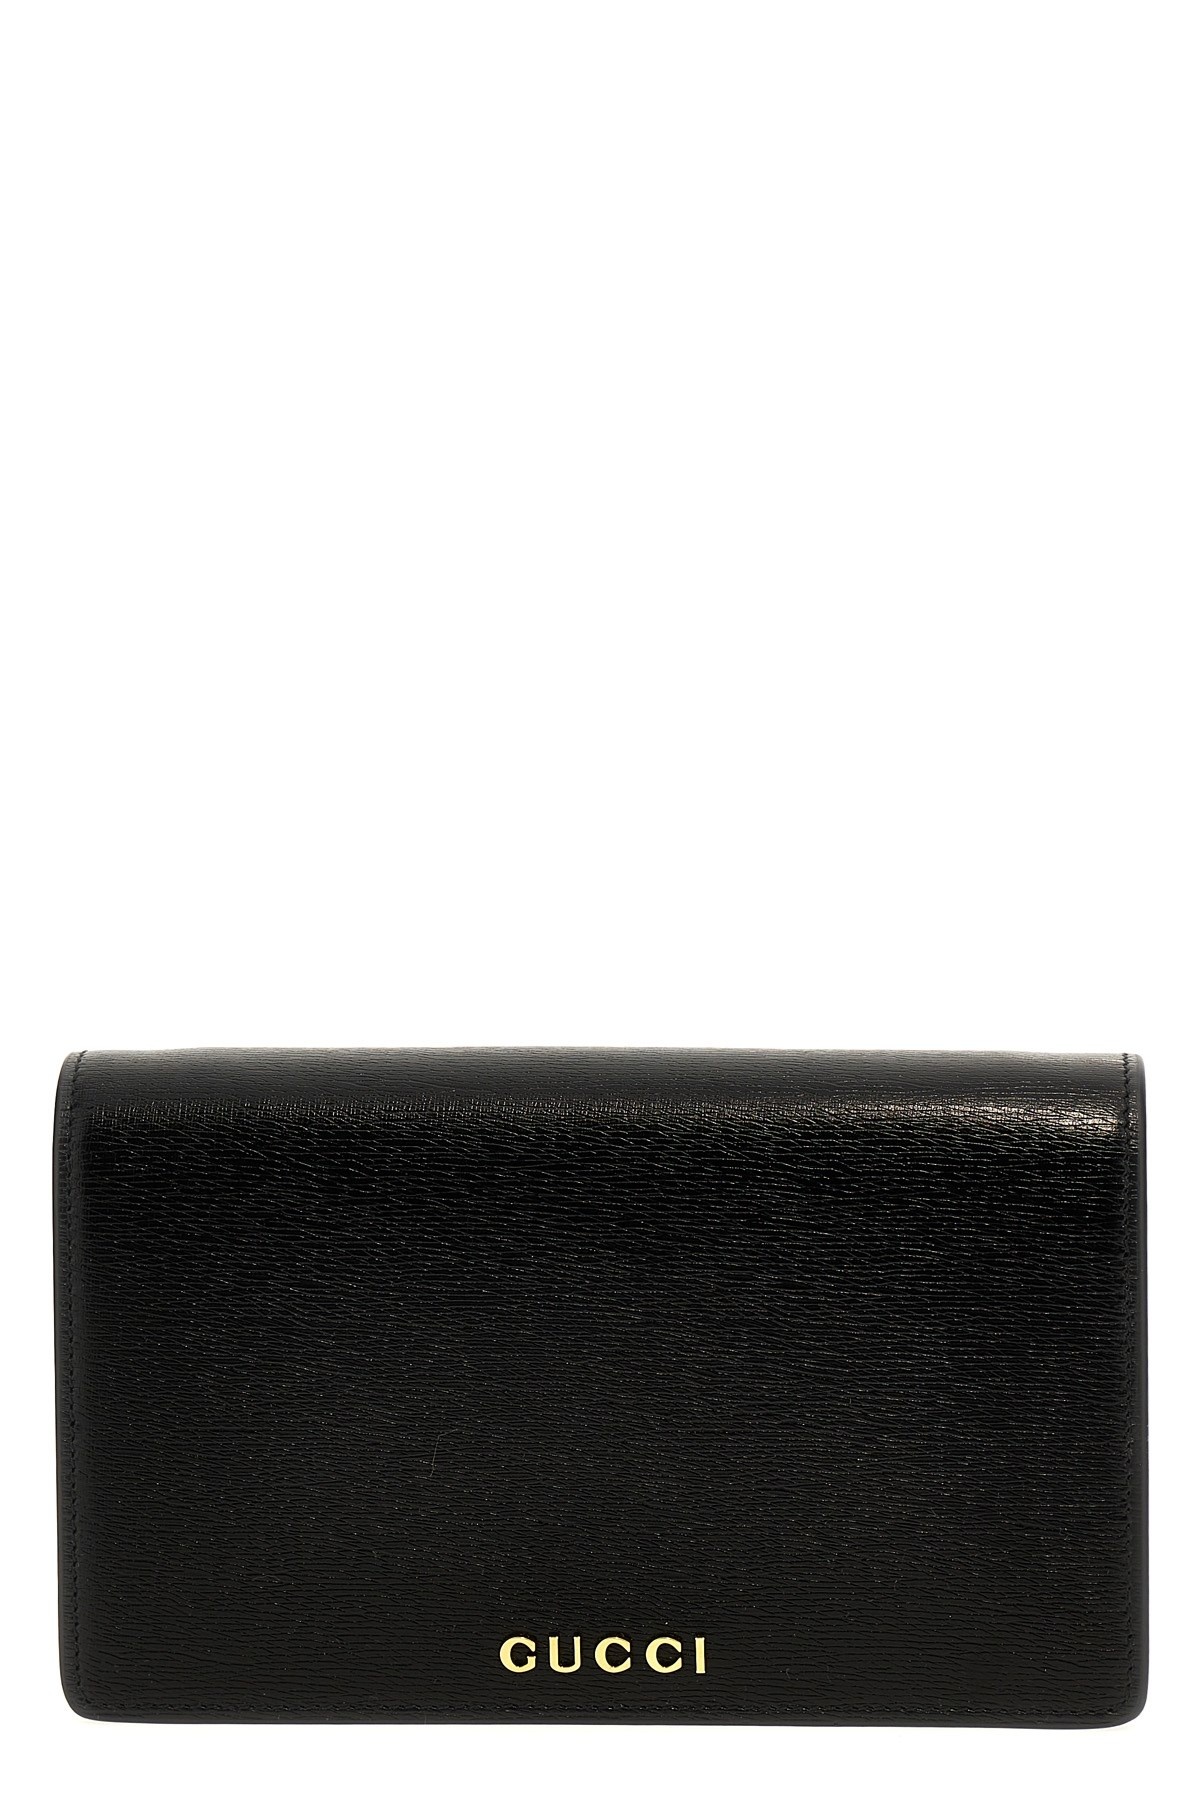 'Gucci' wallet - 1